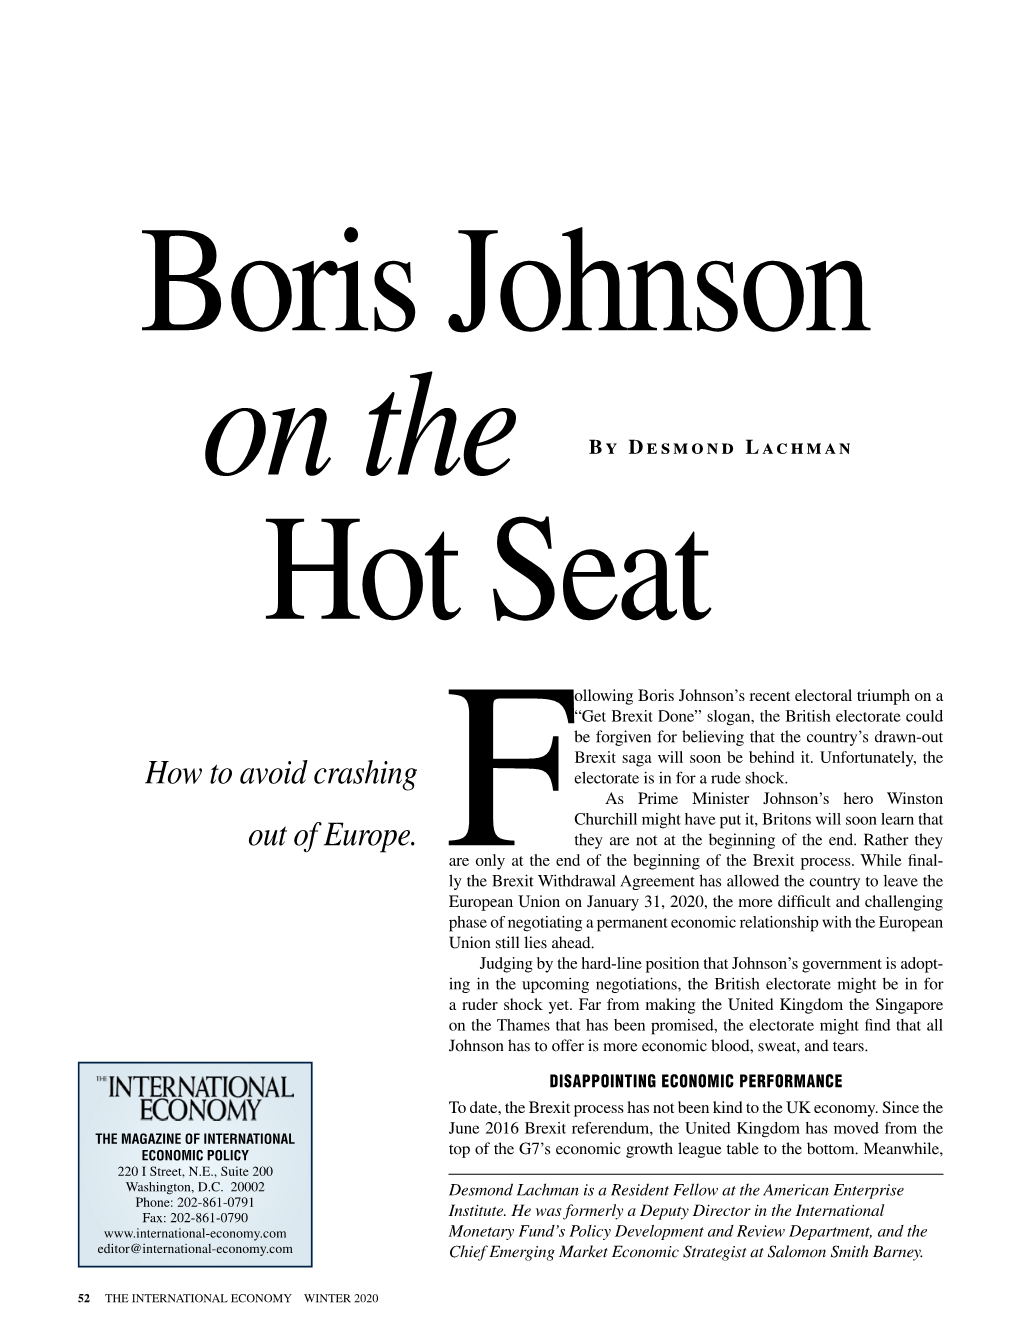 Boris Johnson on the Hot Seat